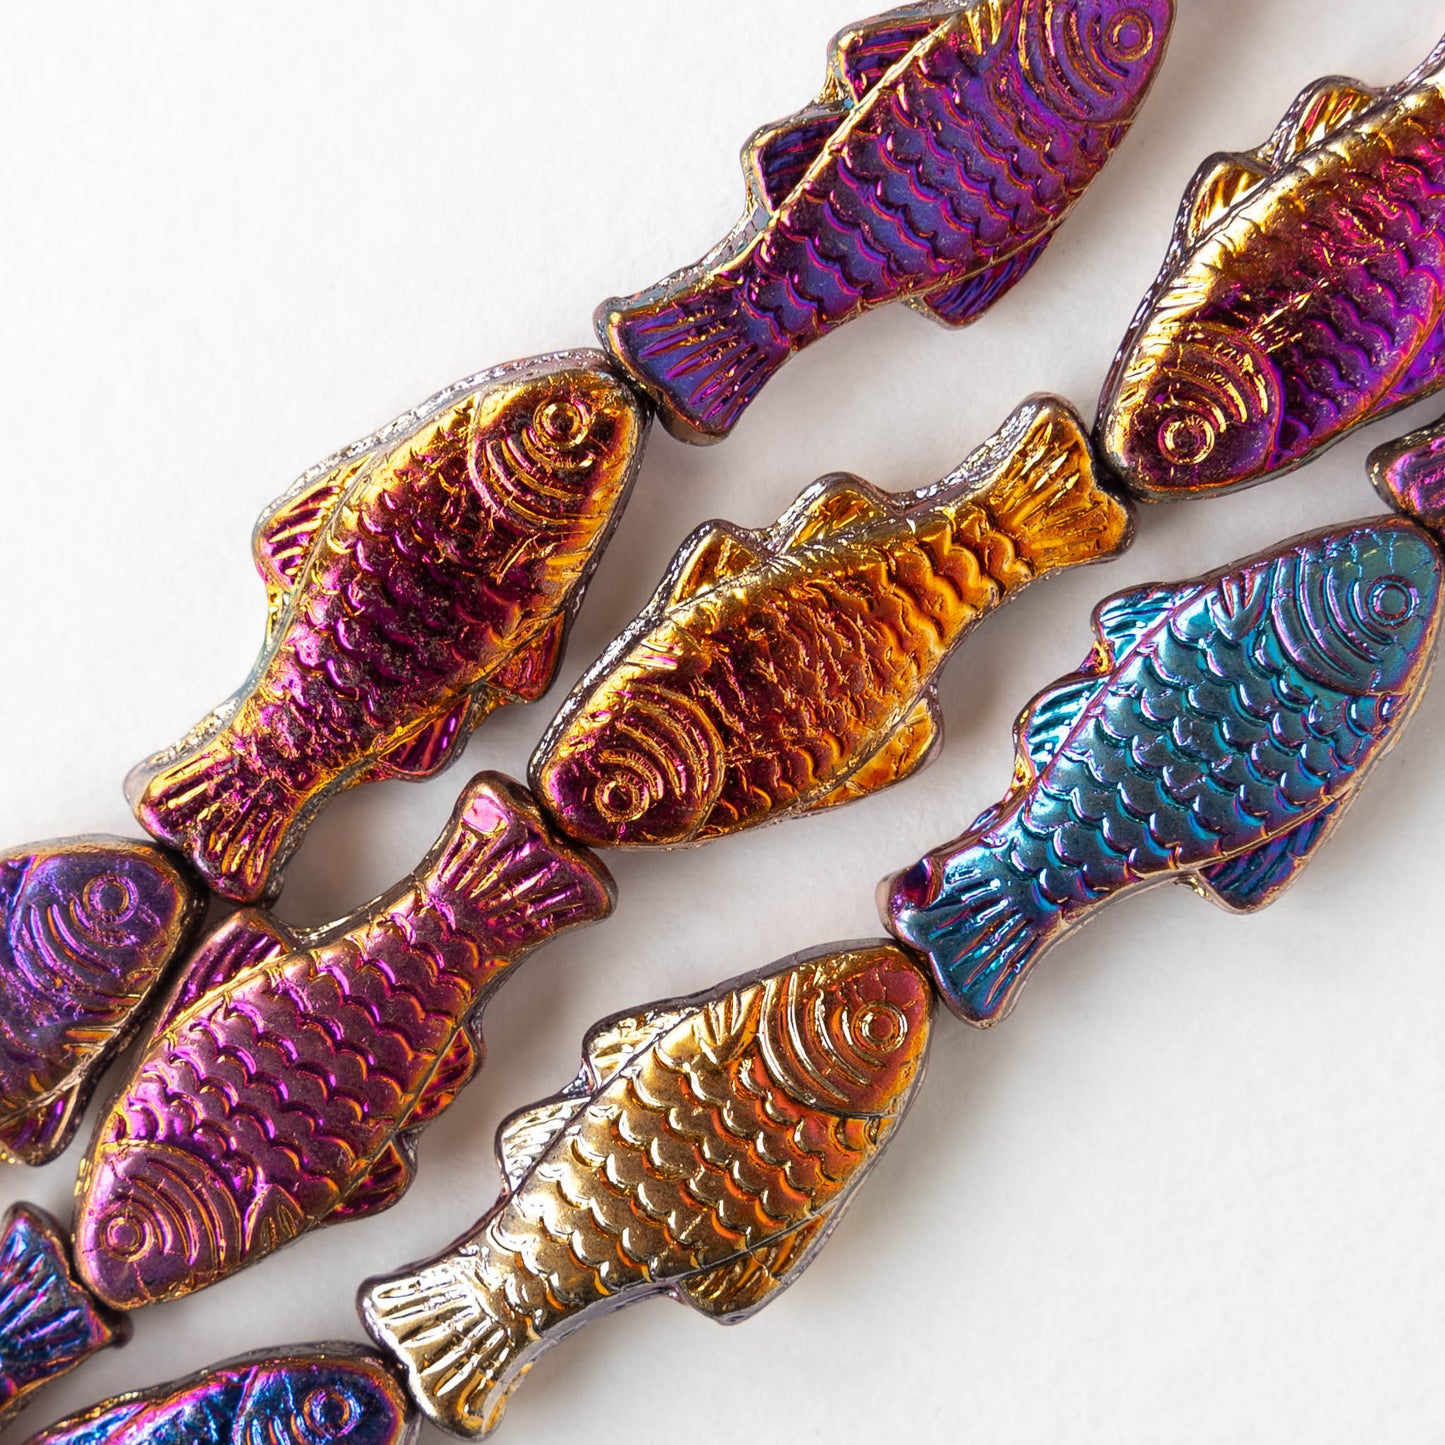 Glass Fish Beads - Iridescent Iris Mix - 6